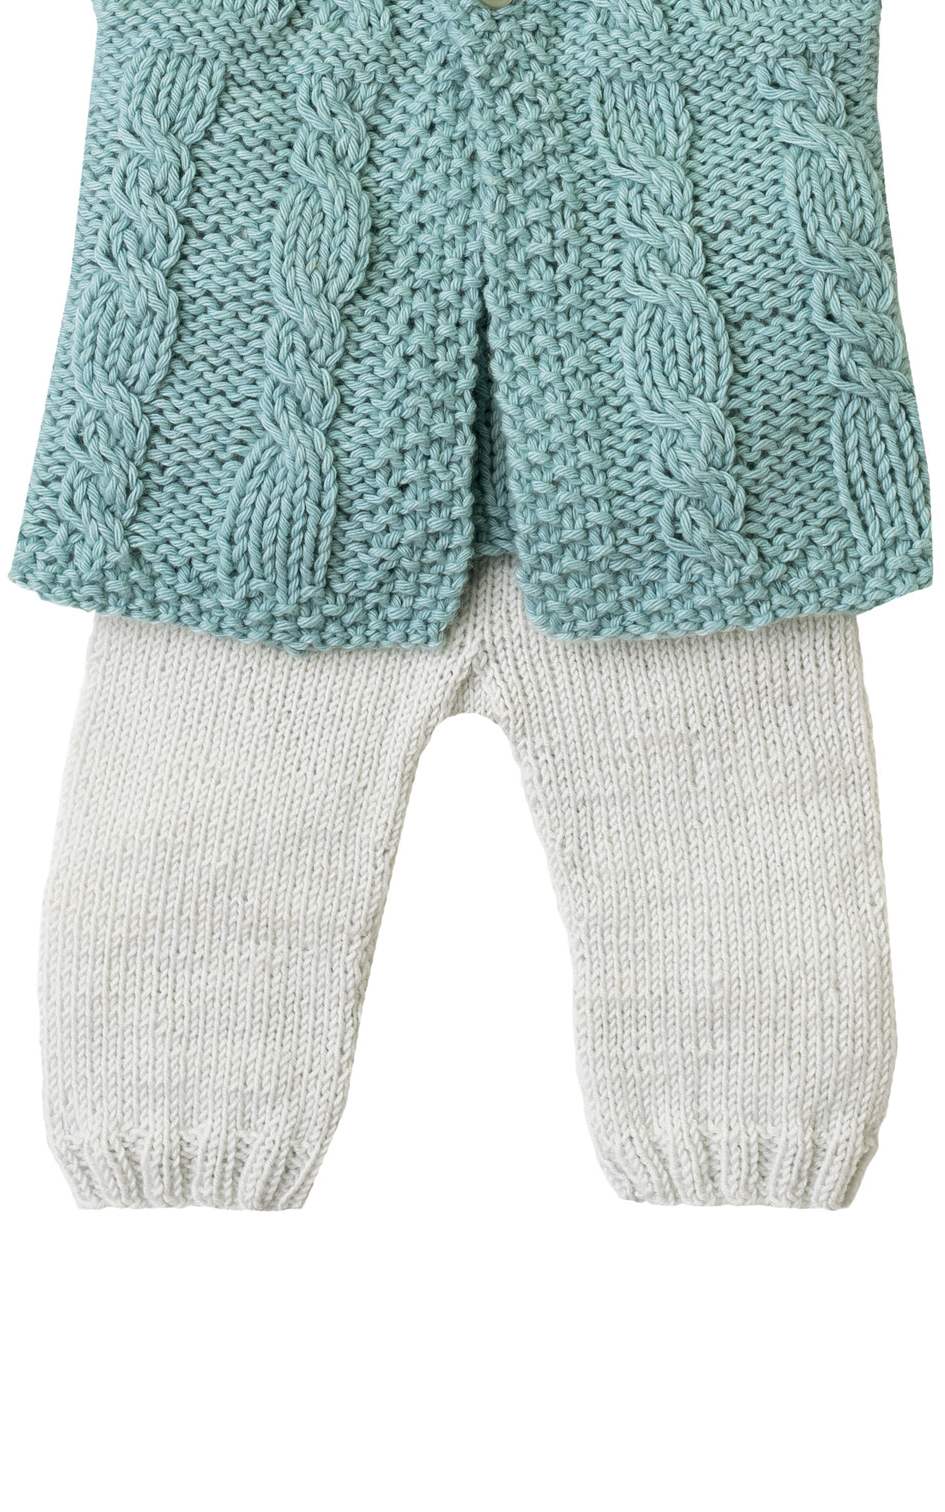 Baby Hose mit Rippenrand - Strickset von LANA GROSSA jetzt online kaufen bei OONIQUE